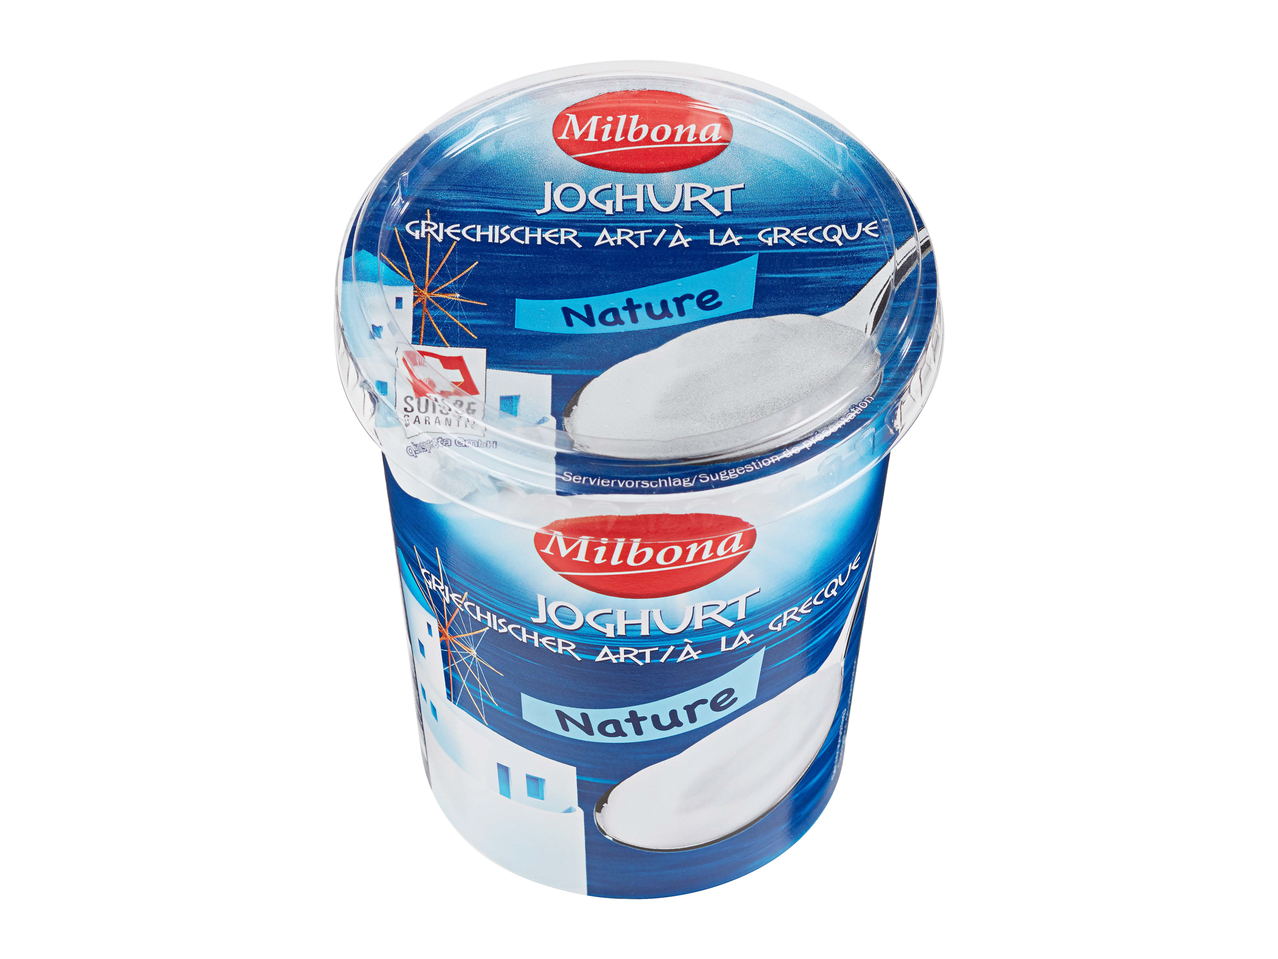 Yogurt greco al naturale